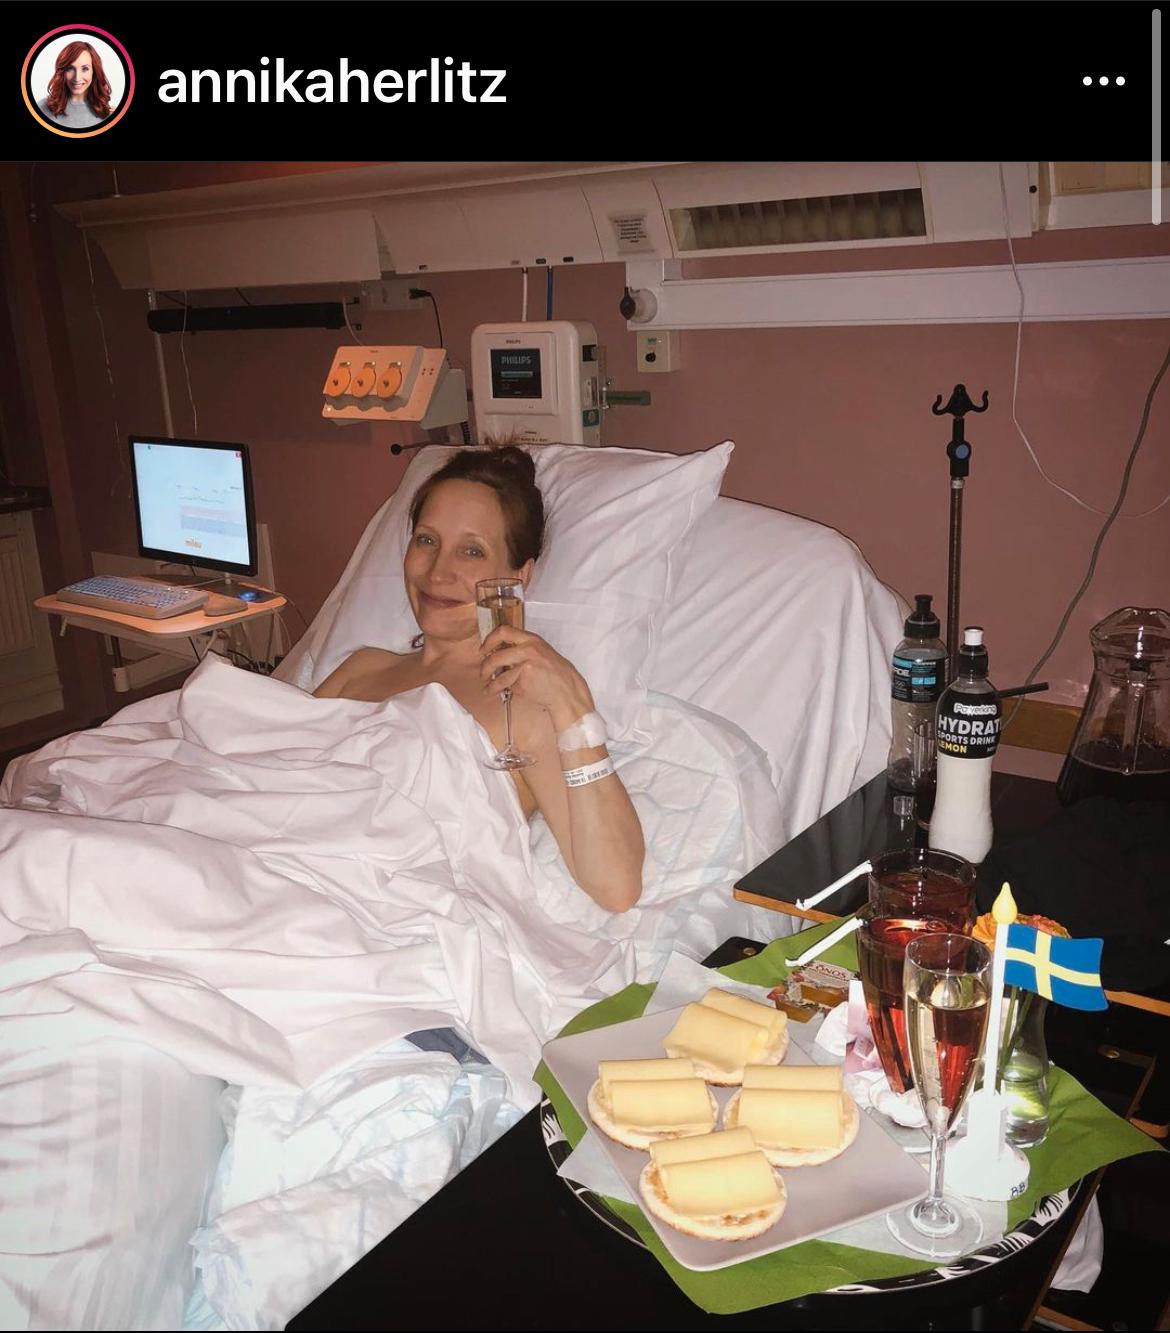 Annika Herlitz på sjukhuset. Aftonbladet har fått tillstånd att publicera bilden från Instagram.